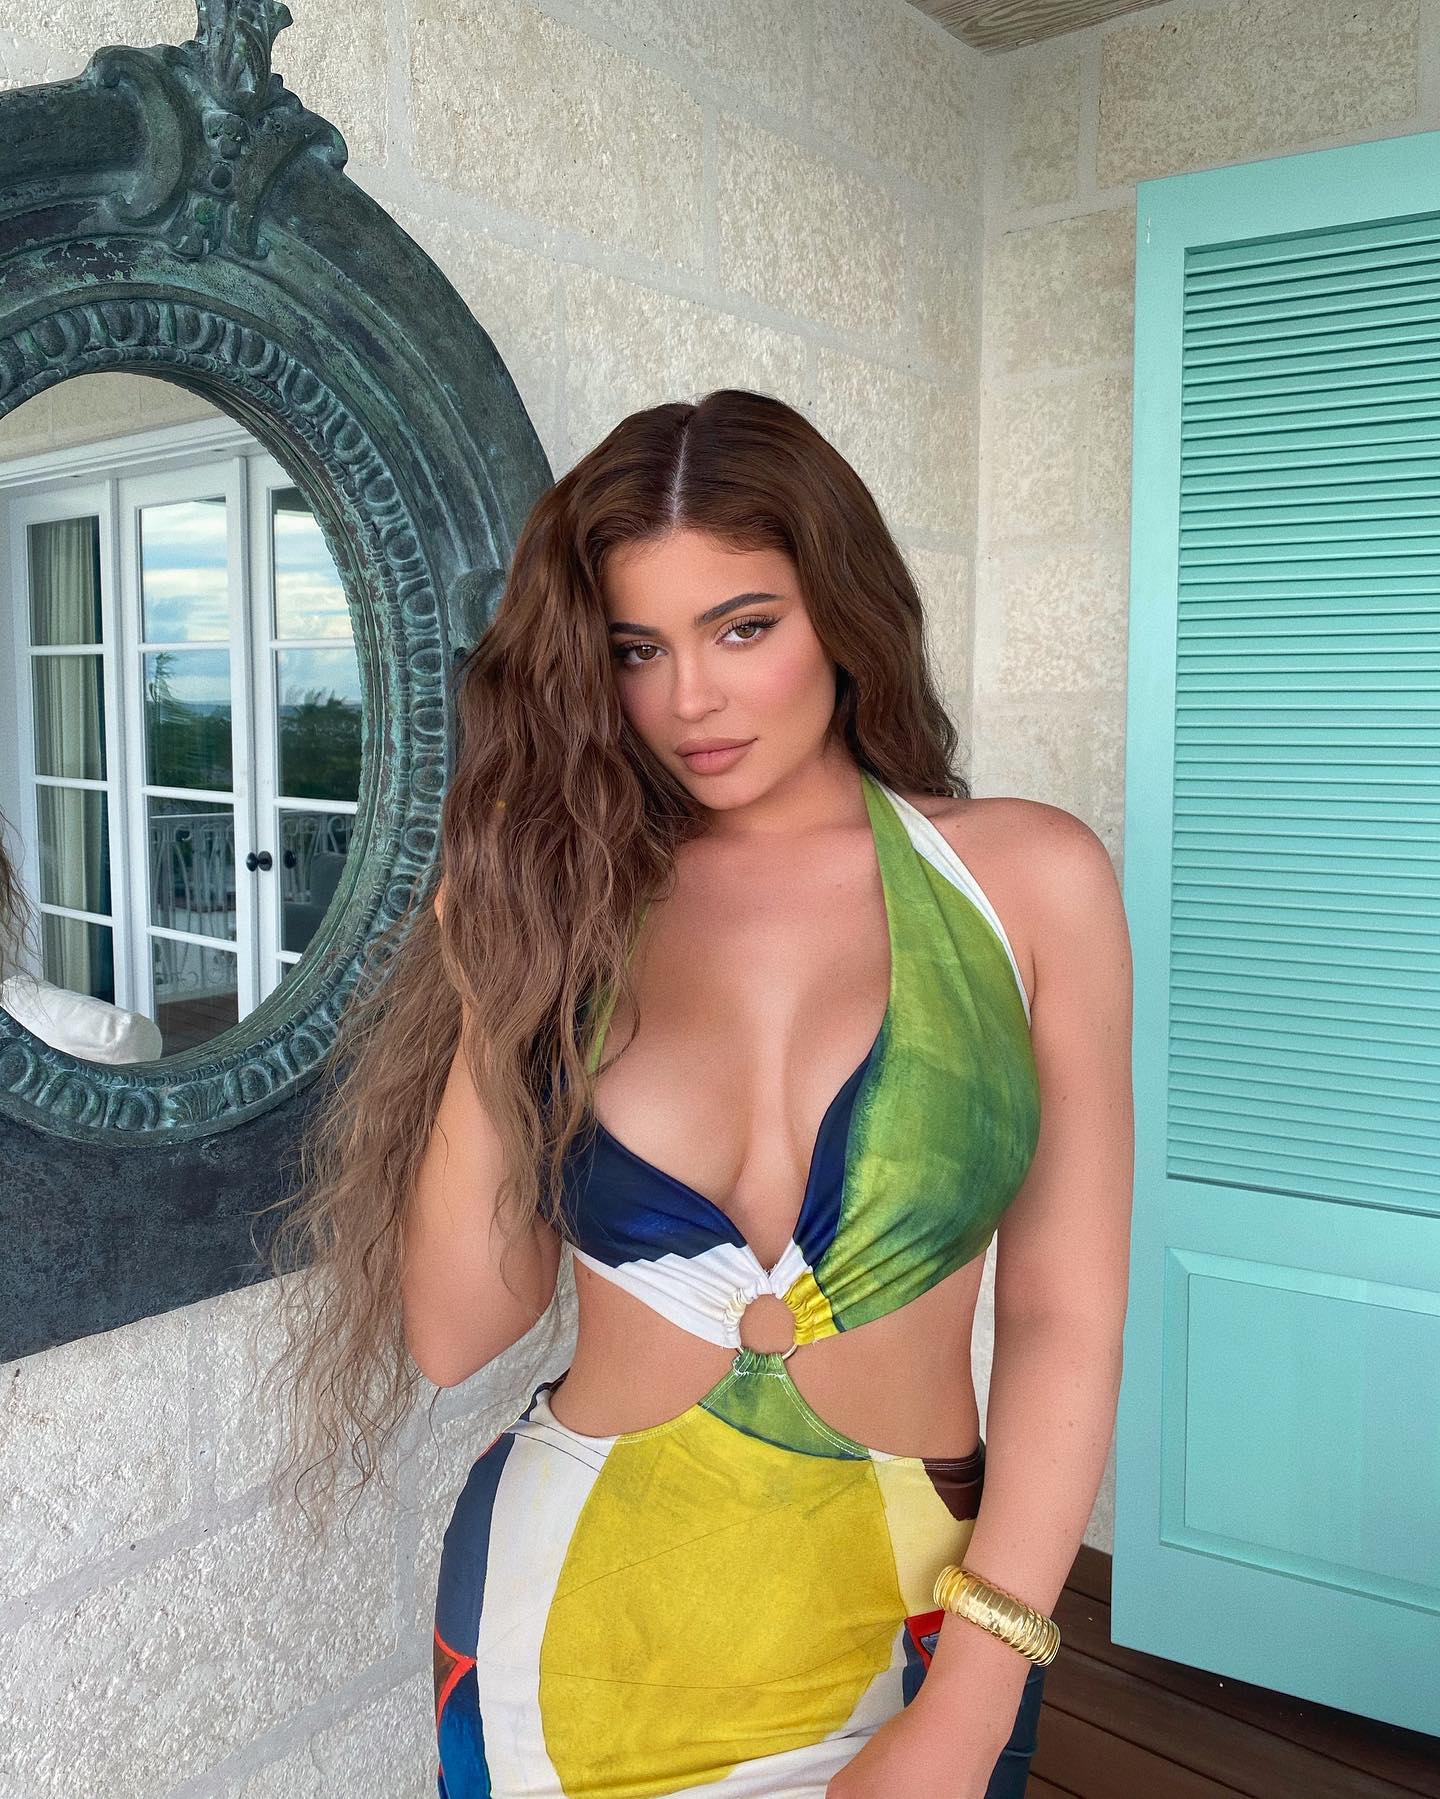 Fotos n°3 : Kylie Jenner en el Caribe!